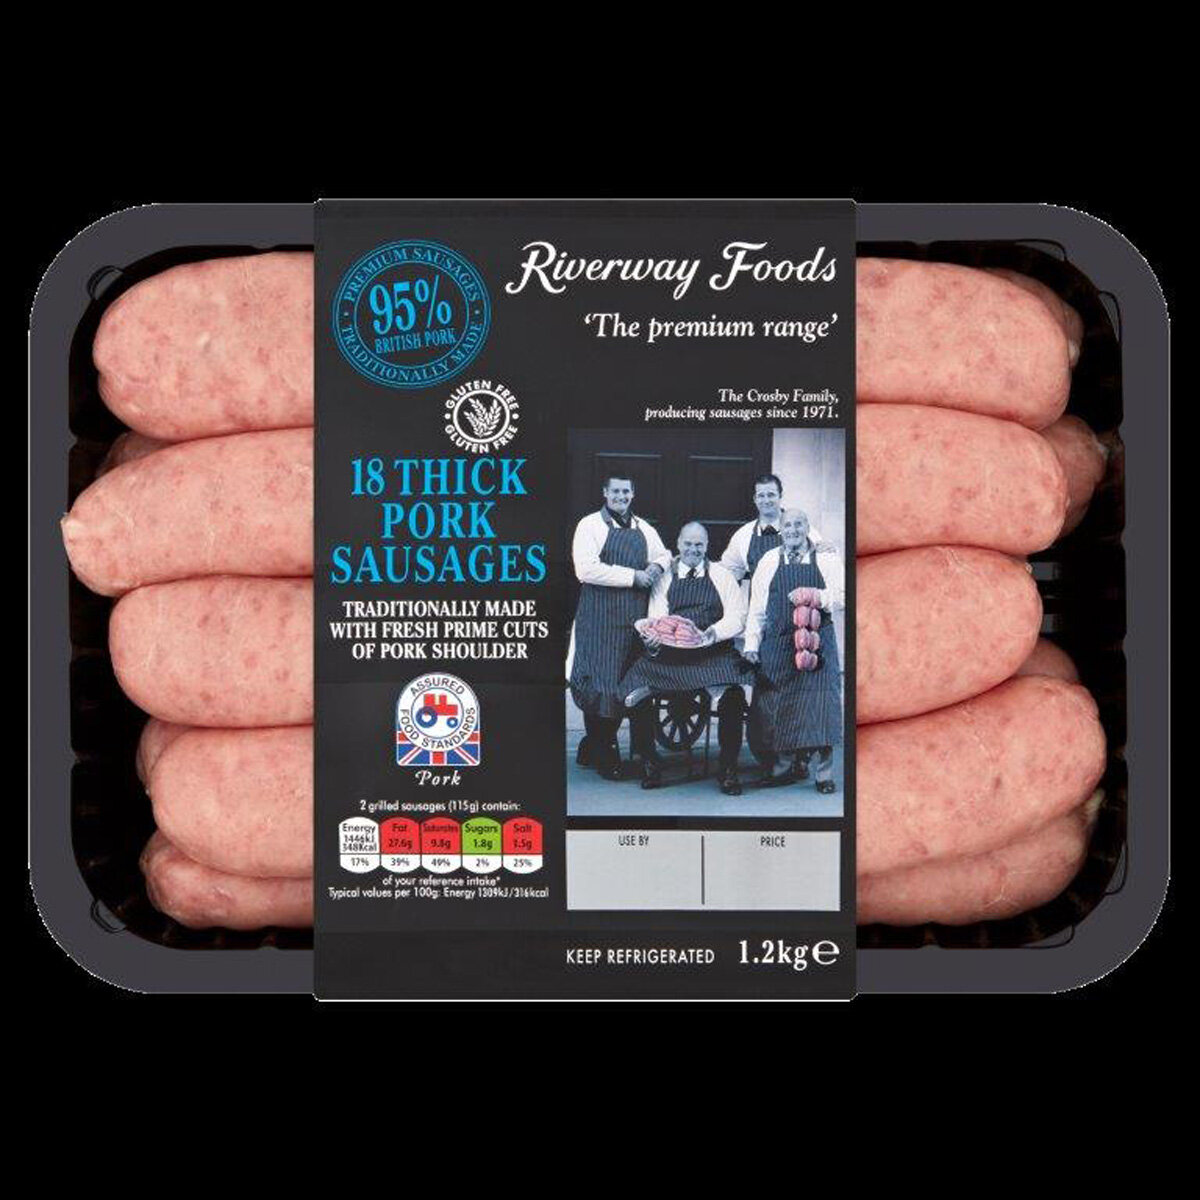 Riverway Foods 18 Gluten Free Thick Pork Sausages, 1.2kg